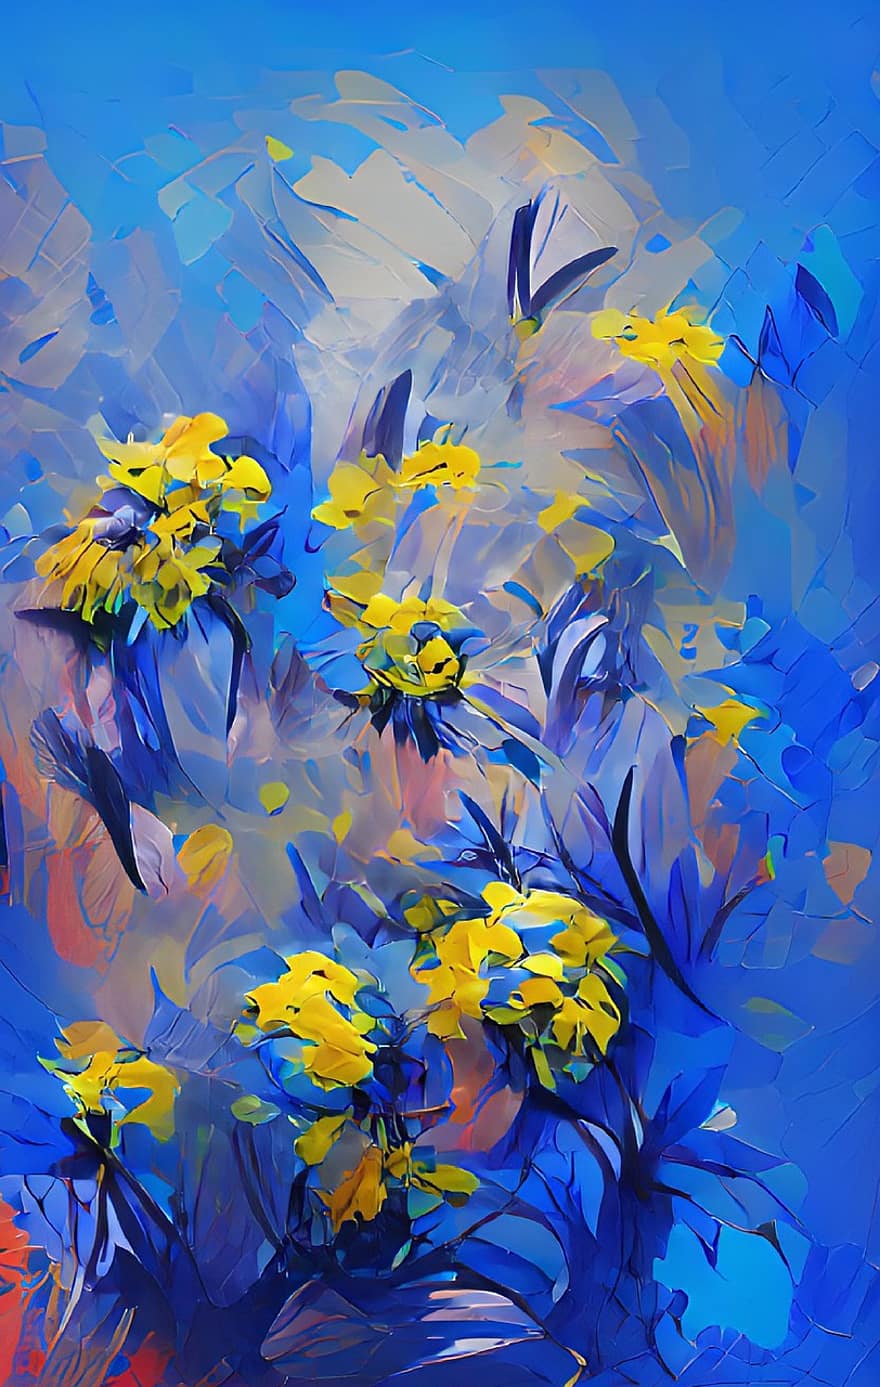 květiny, abstraktní, Ukrajina, umělecká díla, malování, tvořivý, rostlin, pozadí, ilustrace, modrý, žlutá